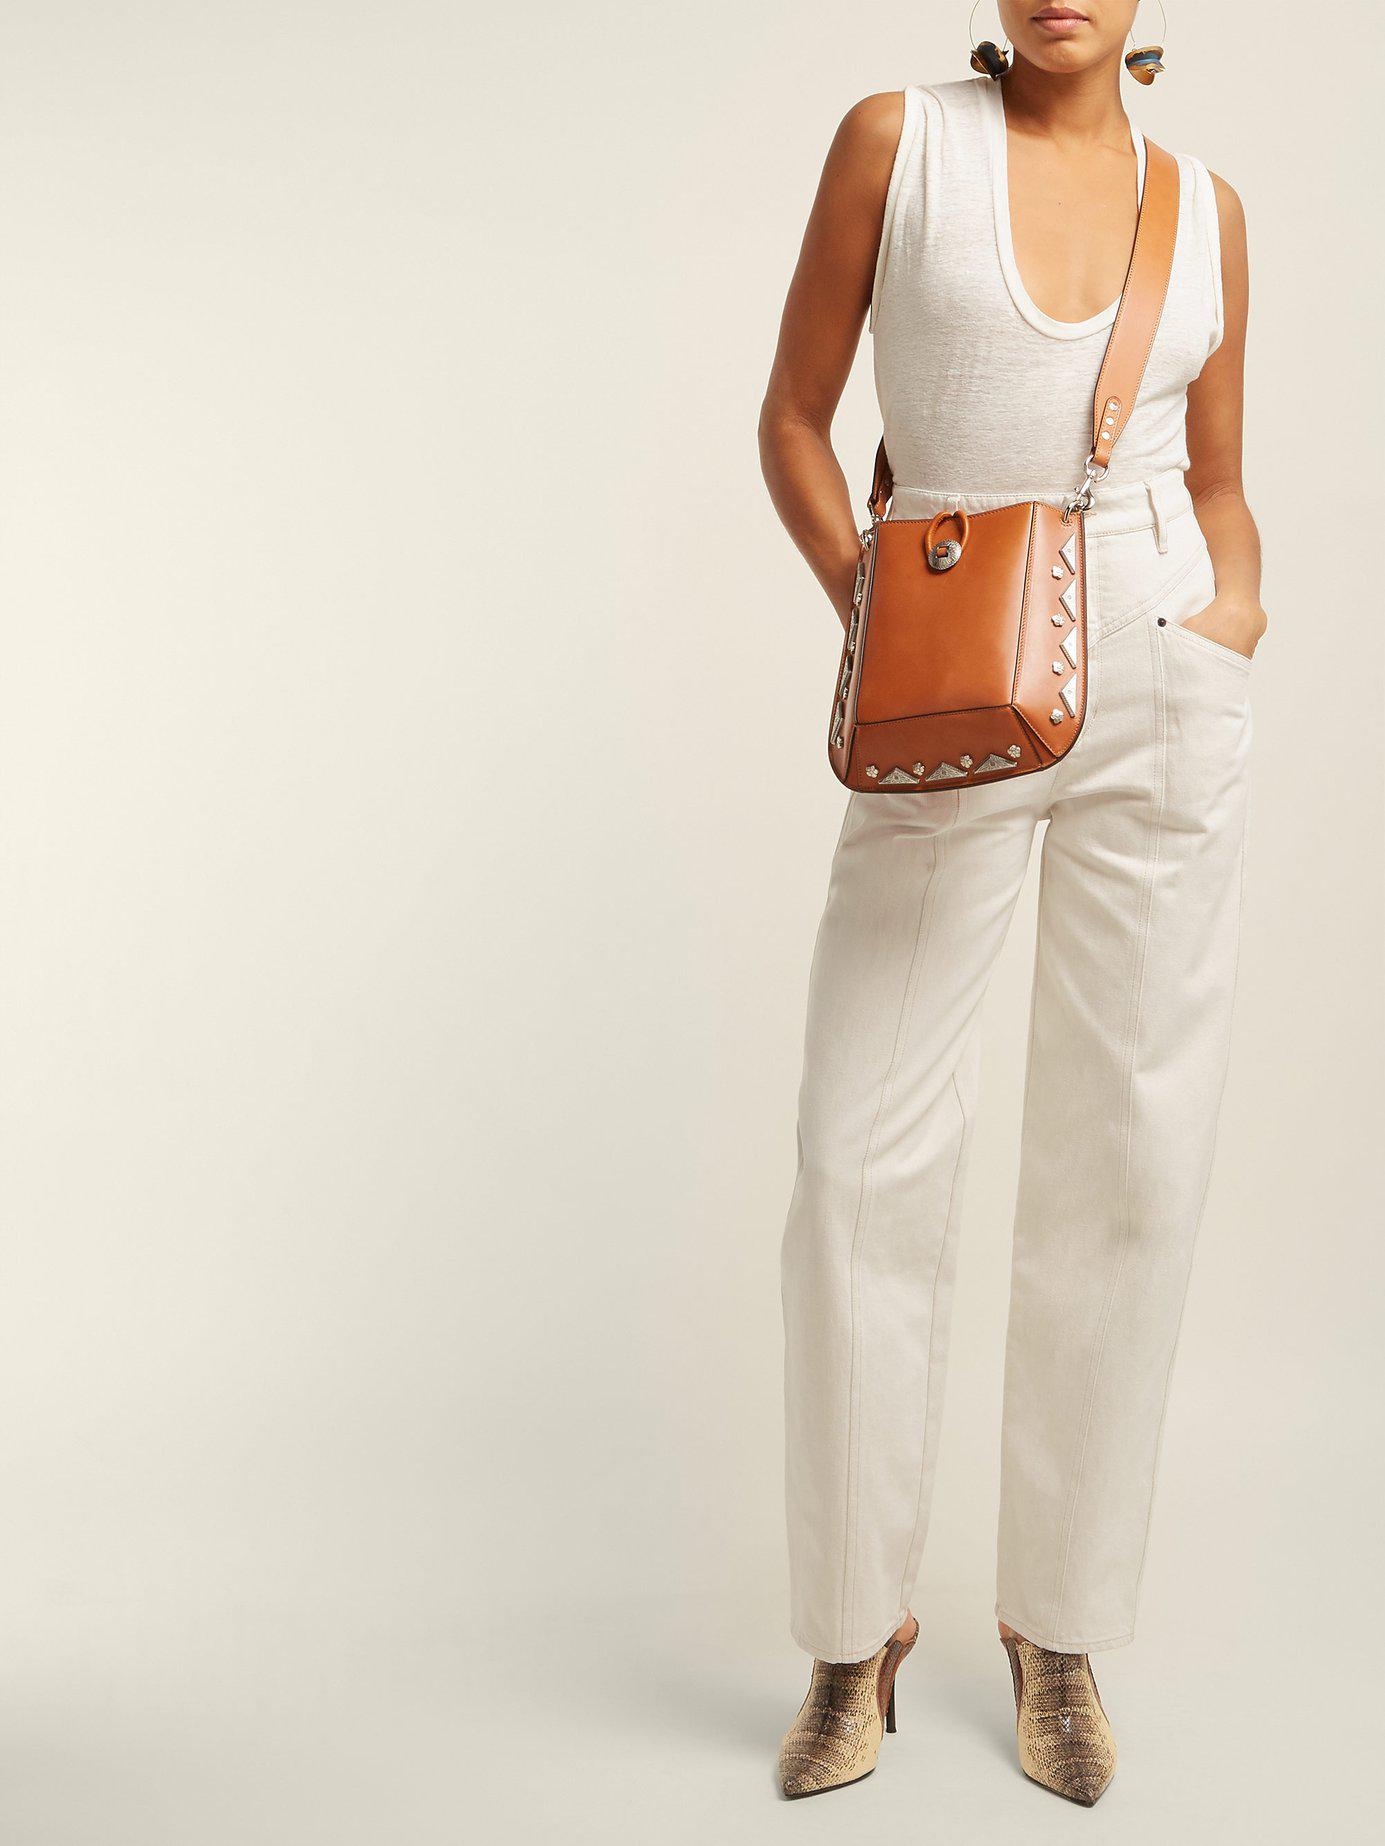 Isabel Marant Oskan Stud Embellished Leather Shoulder Bag in Camel 